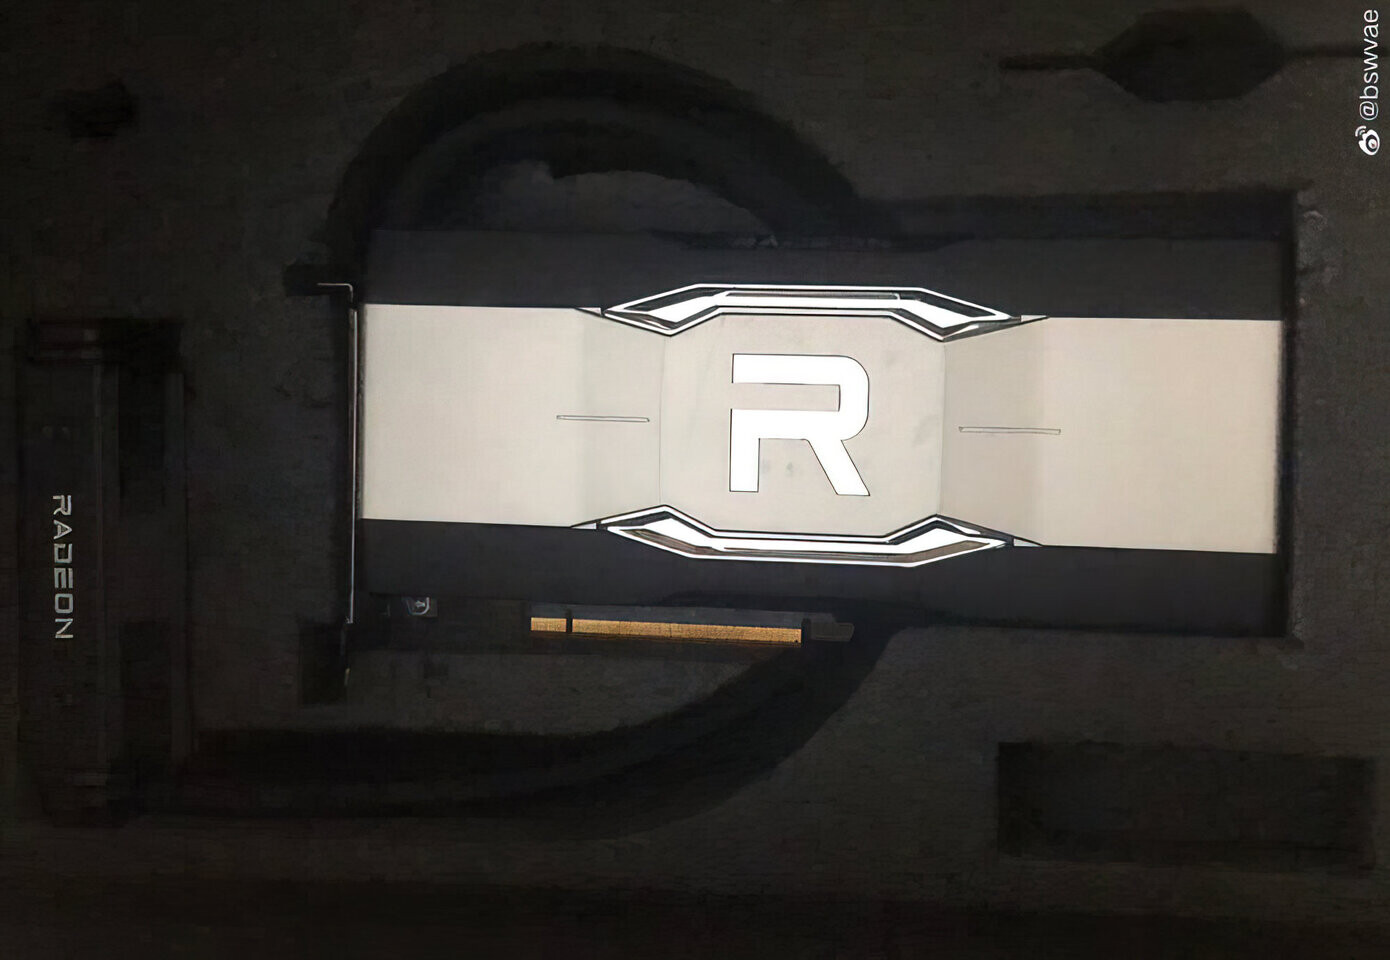 ظهور صور عينة هندسية من البطاقة الرسومية AMD Radeon RX 6900 XTX